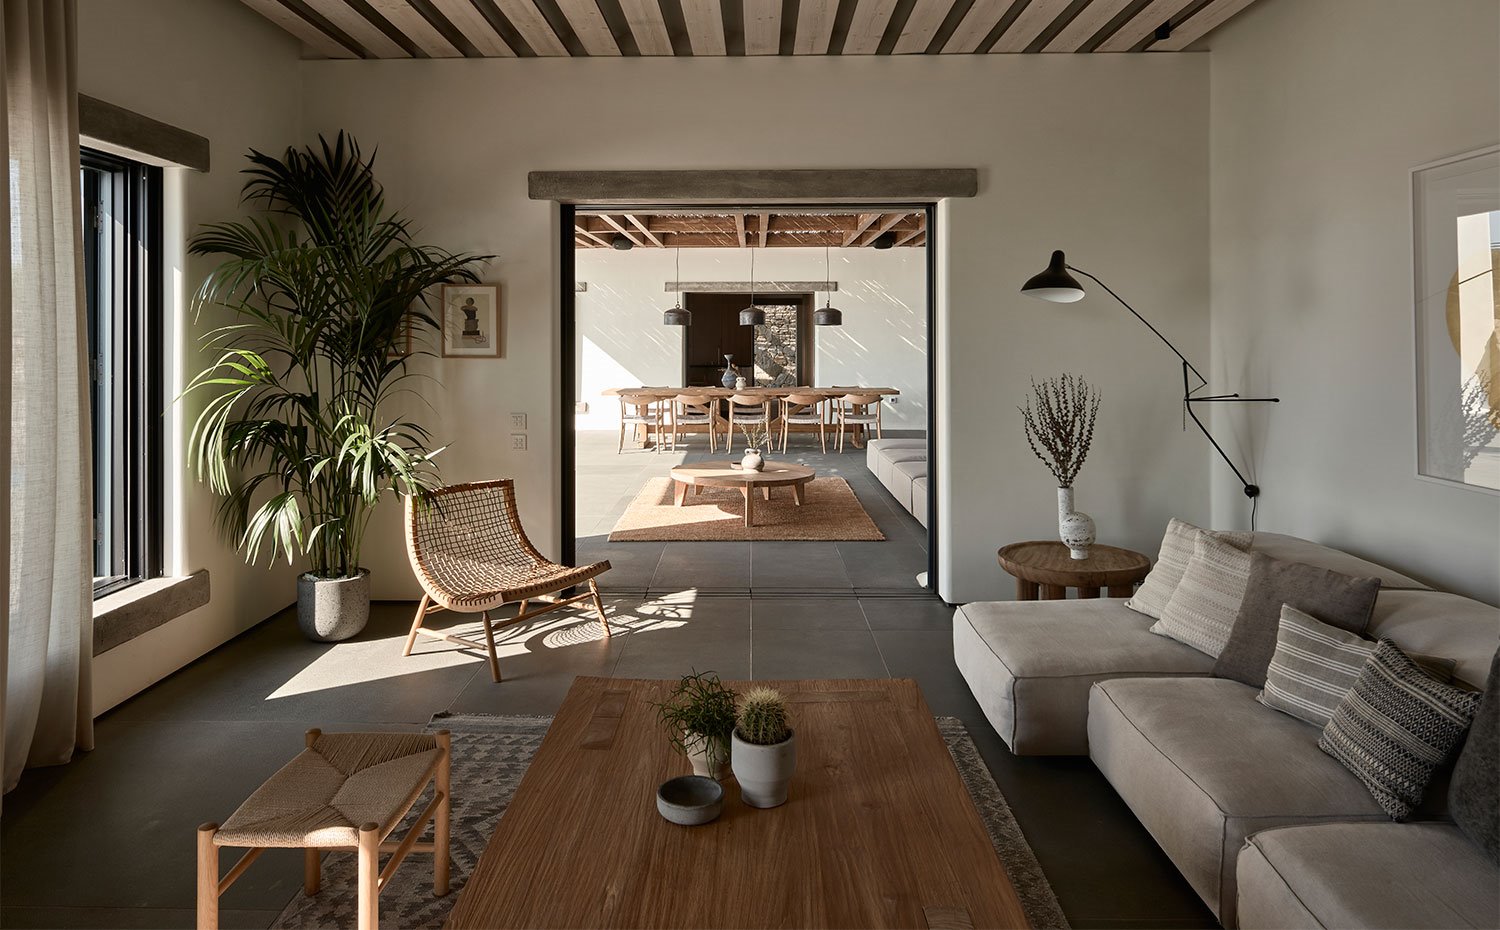 Salón interior abierto hacia el porche exterior, butaca de formas curvas de fibras naturales y gran aplique junto a sofá